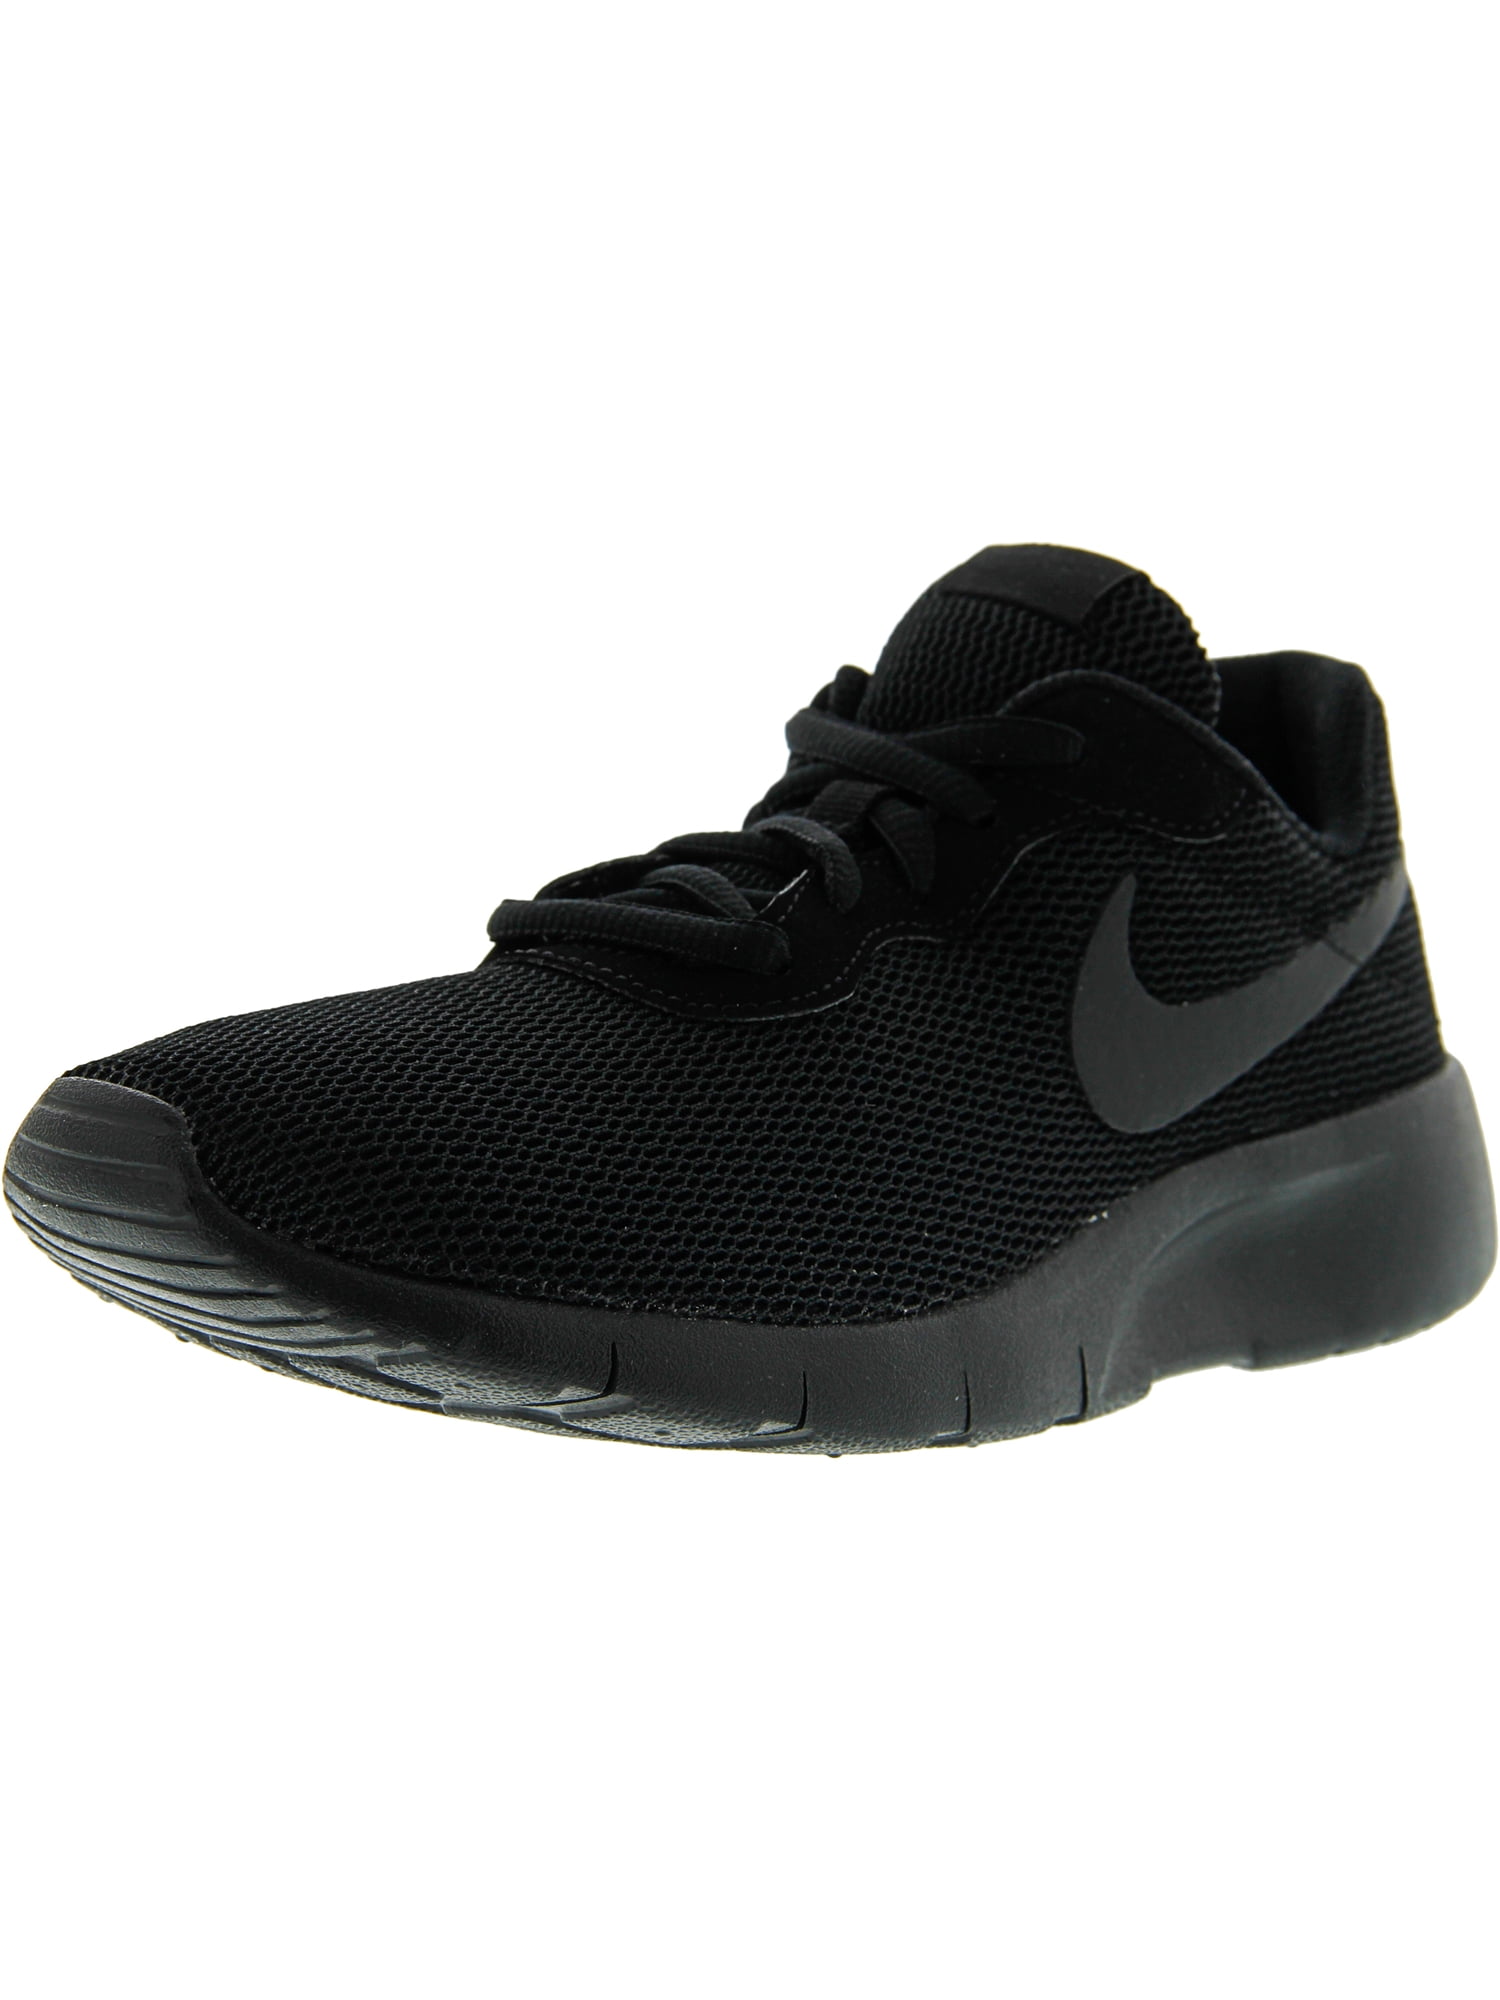 Nike Tanjun Black / Ankle-High Mesh Running Shoe - 7M